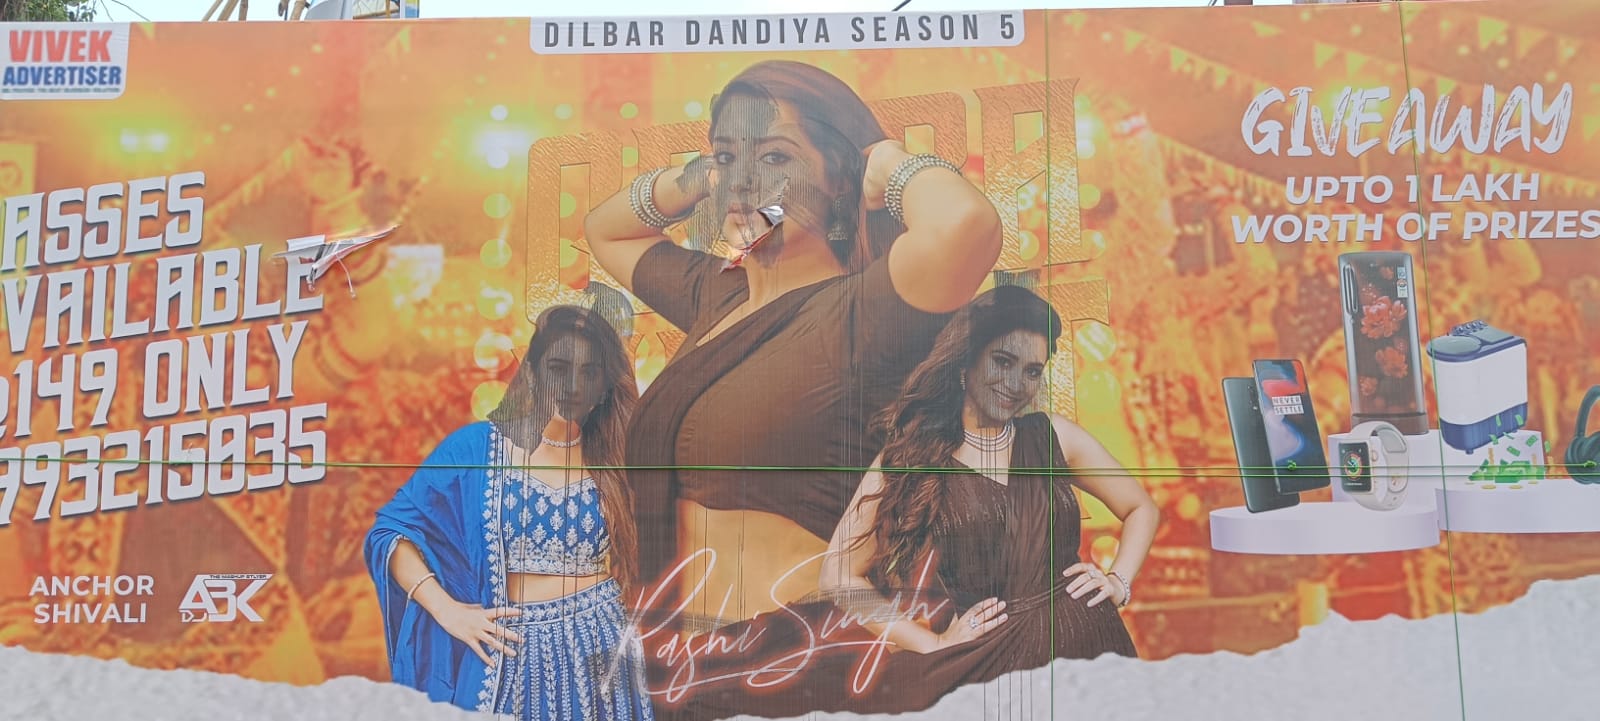 भिलाई में दिलबर डांडिया के फाड़ दिए पोस्टर: साऊथ एक्ट्रेस राशि सिंह आज “दिलबर डांडिया” में खेलेंगी डांडिया…उससे पहले बदमाशों ने पोस्टरों को पहुंचाया नुकसान